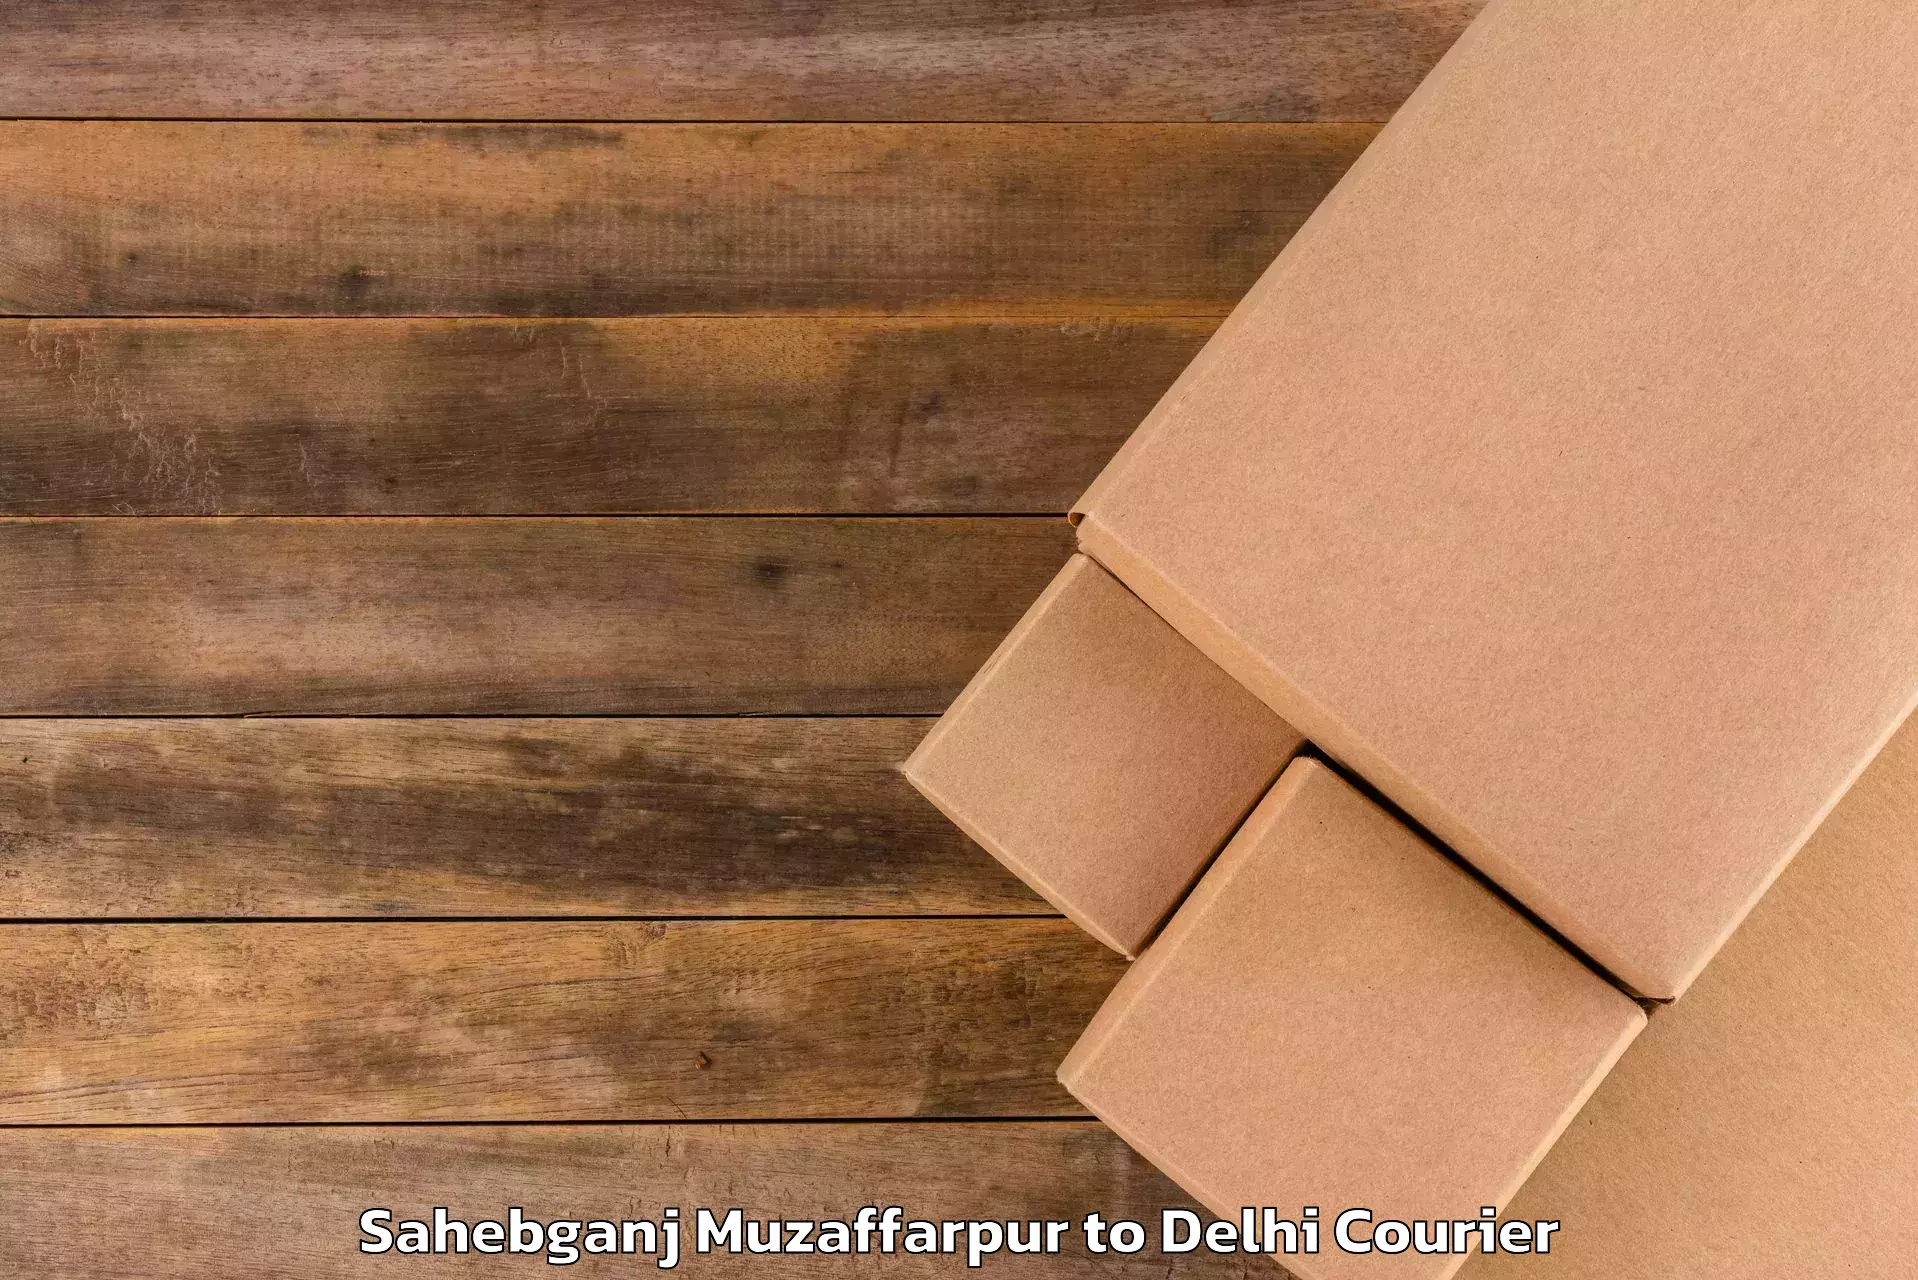 Comprehensive baggage service Sahebganj Muzaffarpur to Delhi